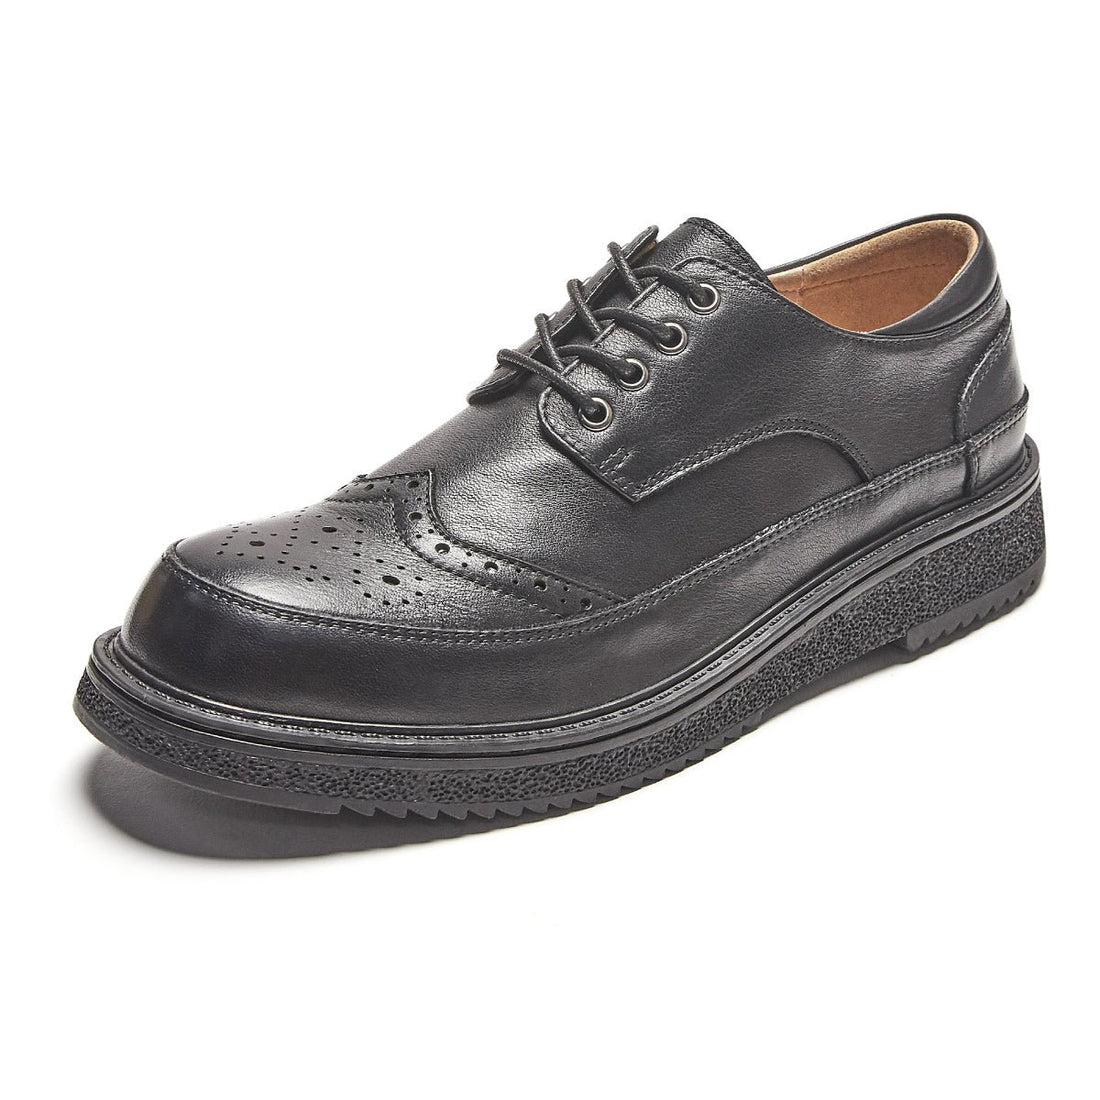 Comfort Soul Brogue Wingtip Black Lace Up Leather Shoes - 0cm